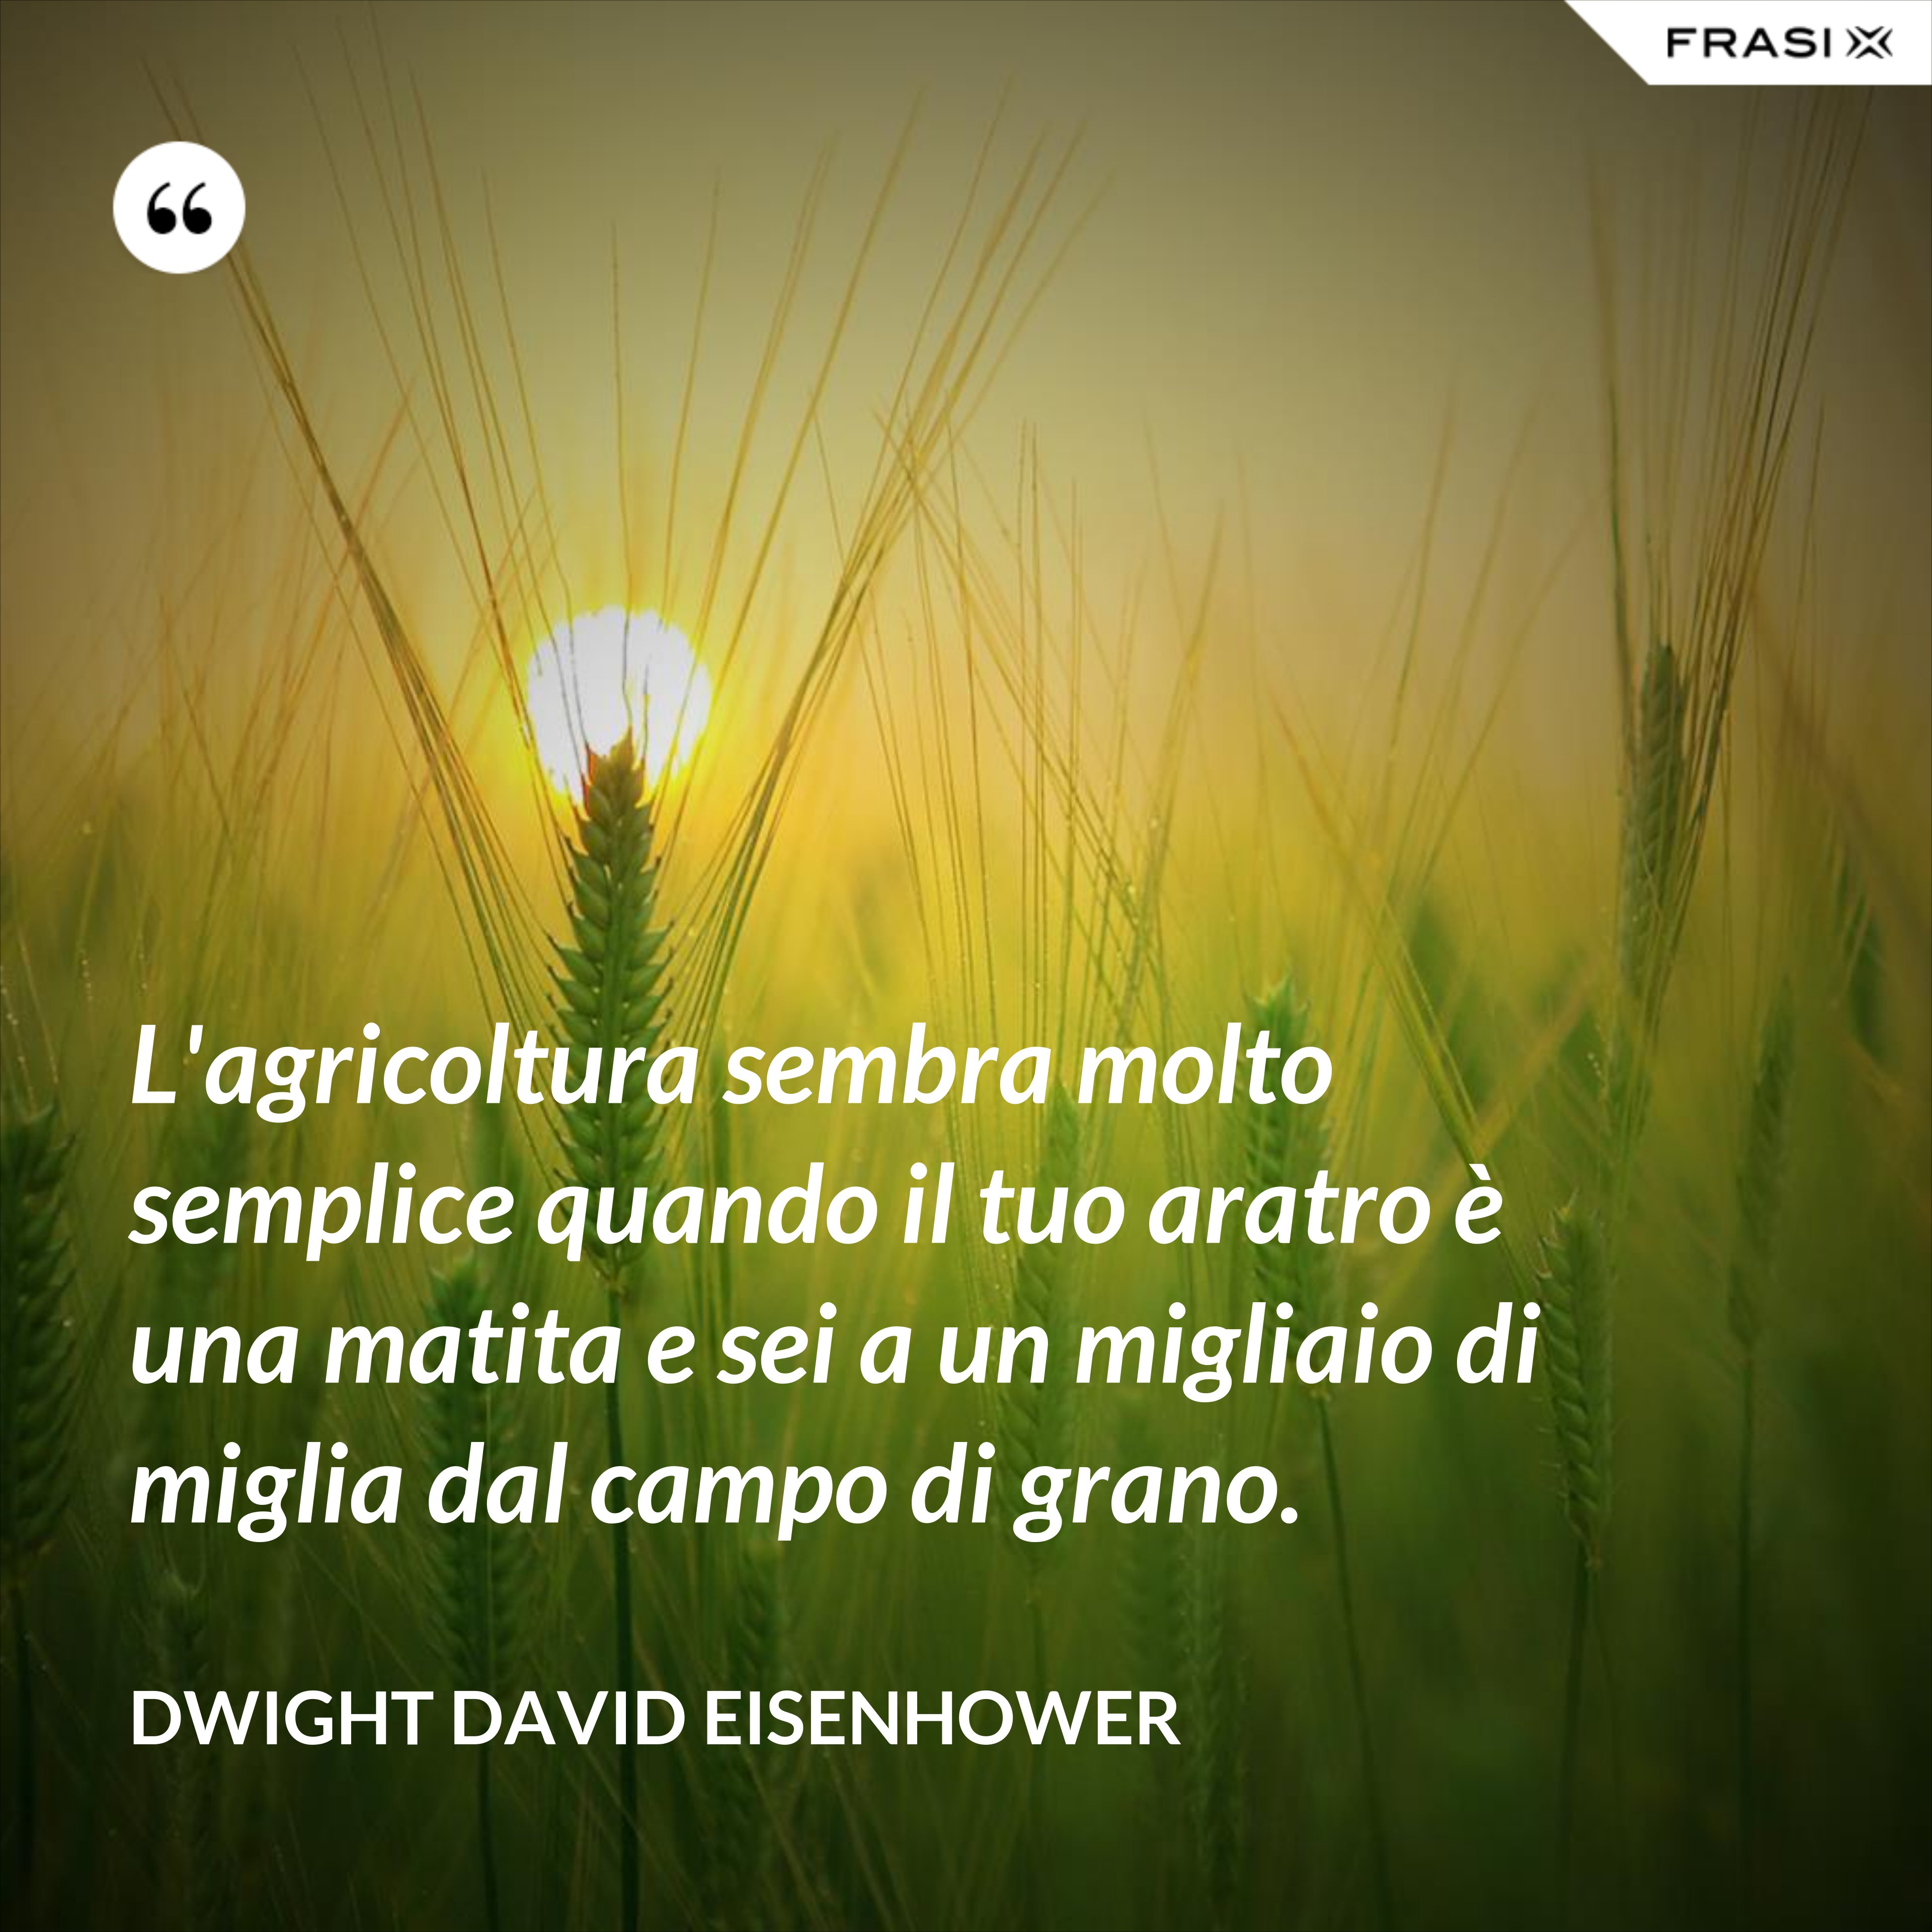 L'agricoltura sembra molto semplice quando il tuo aratro è una matita e sei a un migliaio di miglia dal campo di grano. - Dwight David Eisenhower